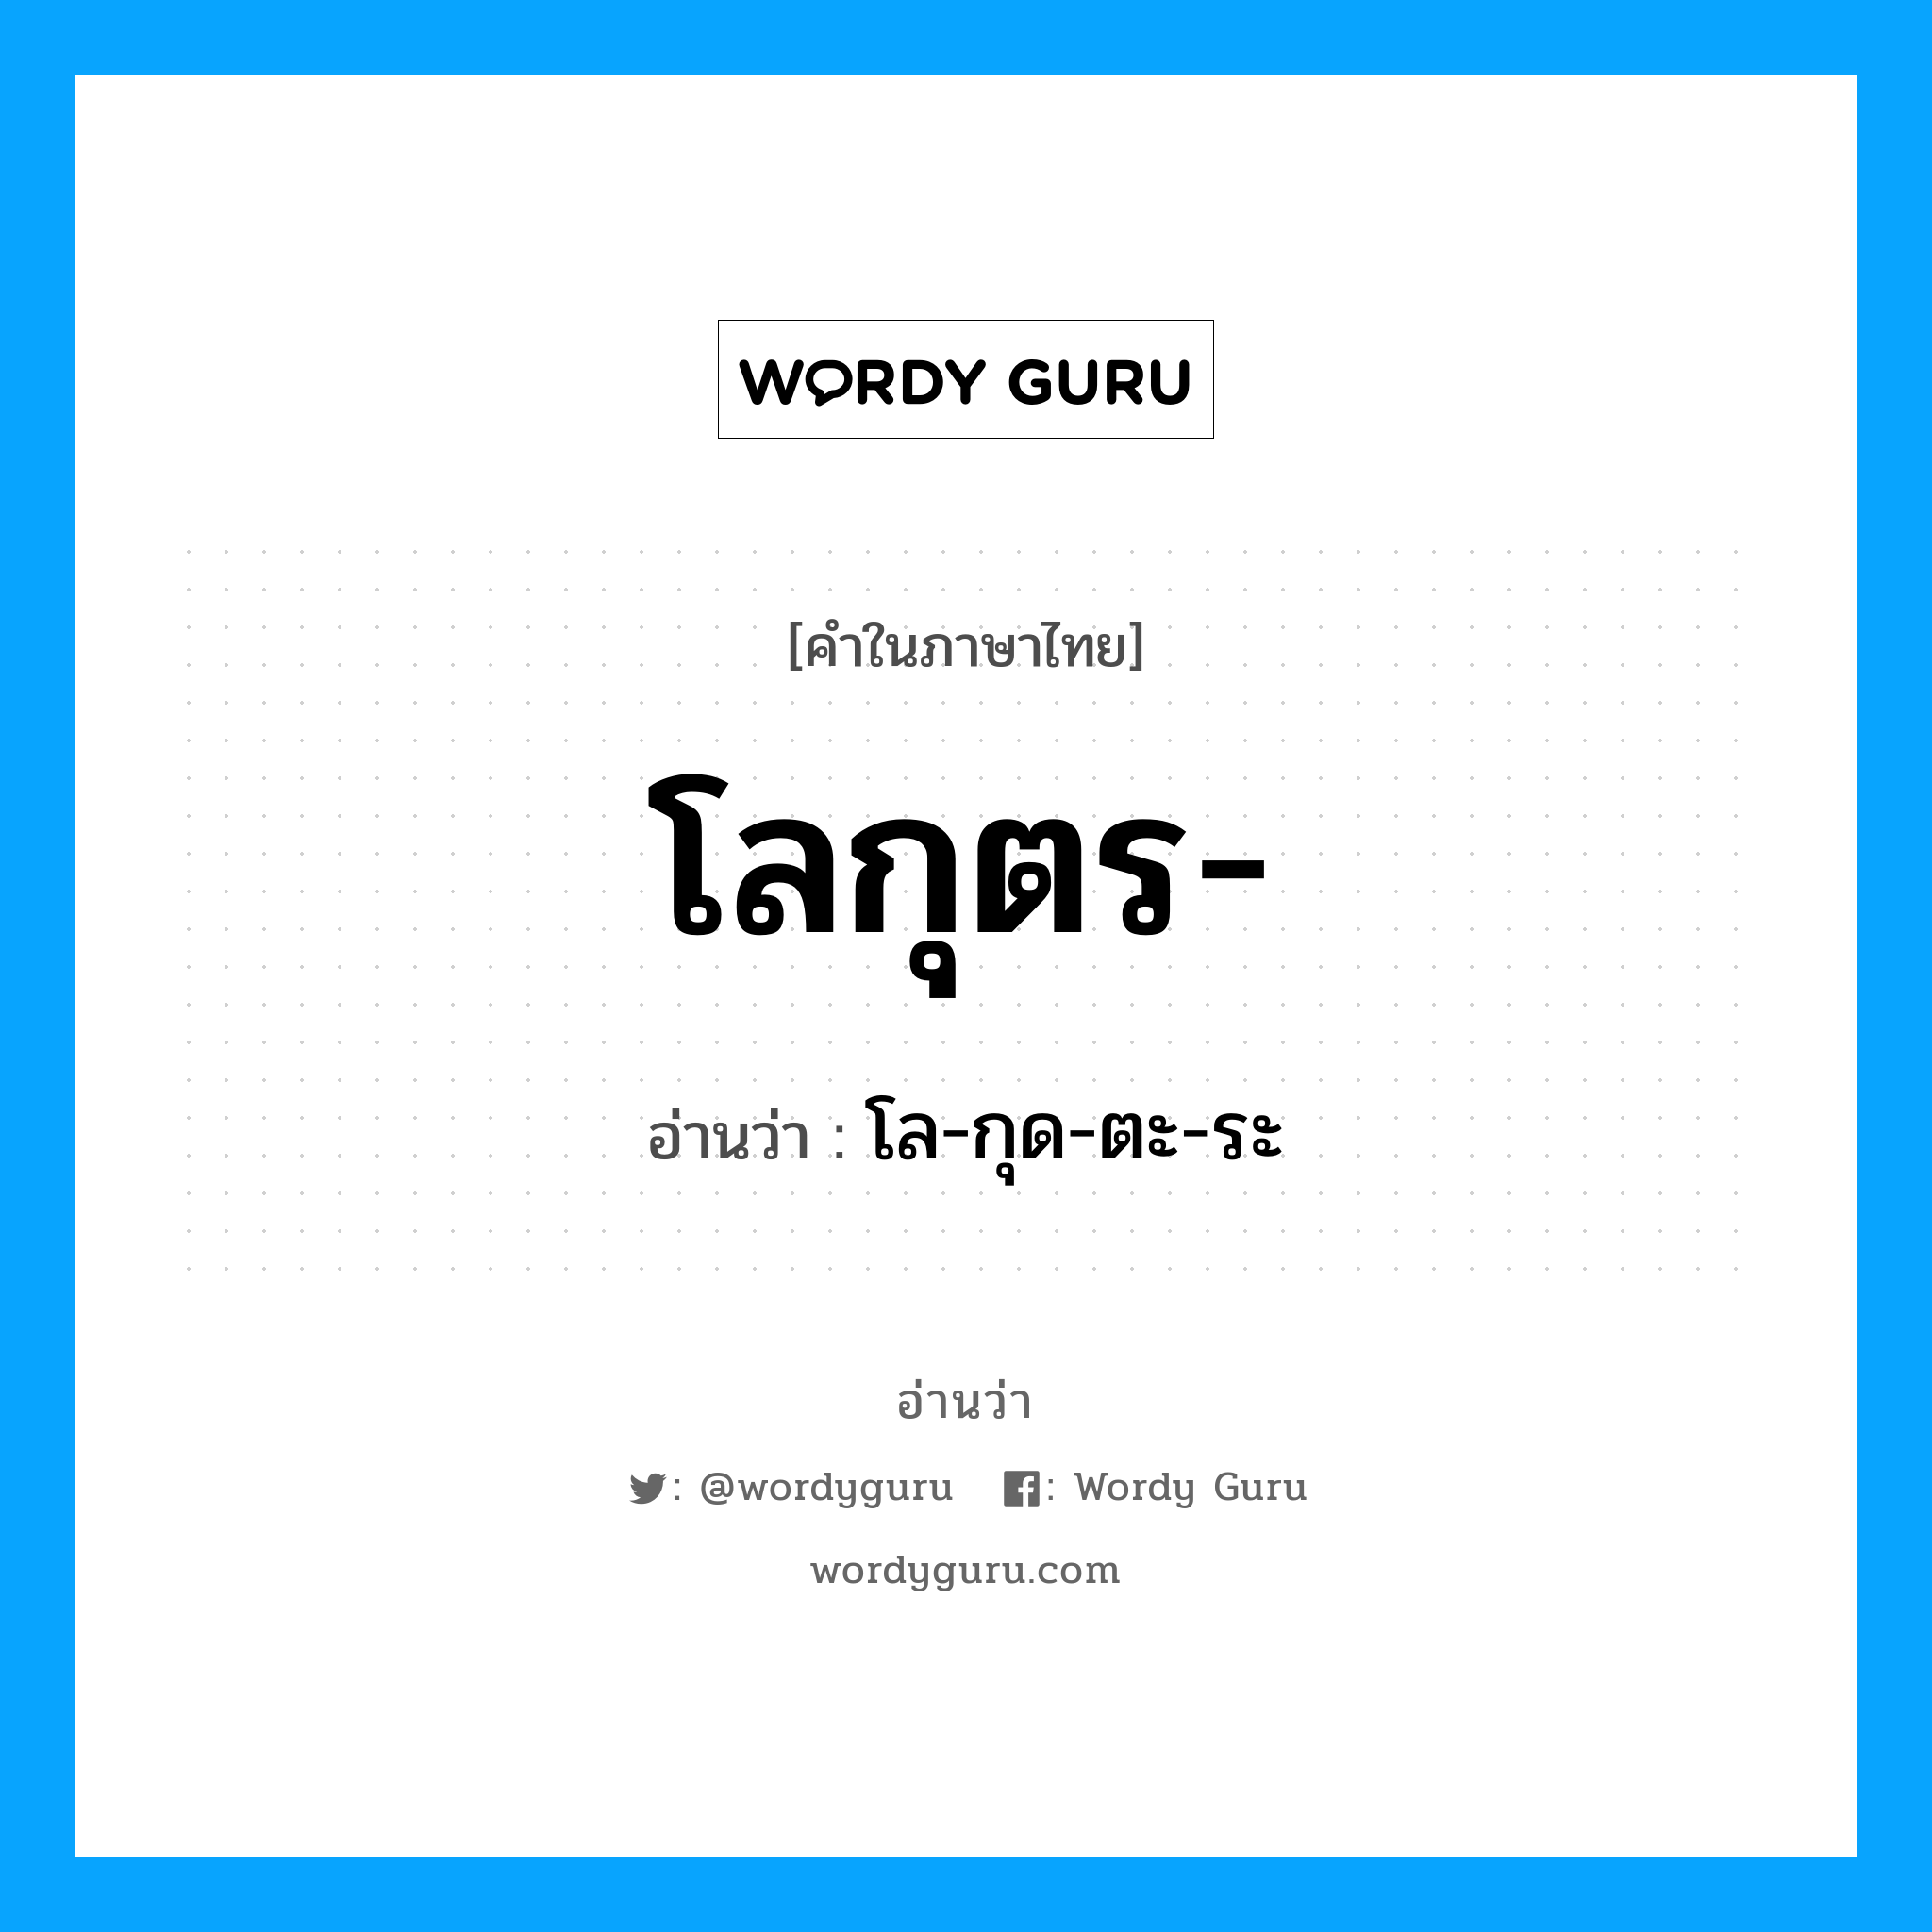 โล-กุด-ตะ-ระ เป็นคำอ่านของคำไหน?, คำในภาษาไทย โล-กุด-ตะ-ระ อ่านว่า โลกุตร-